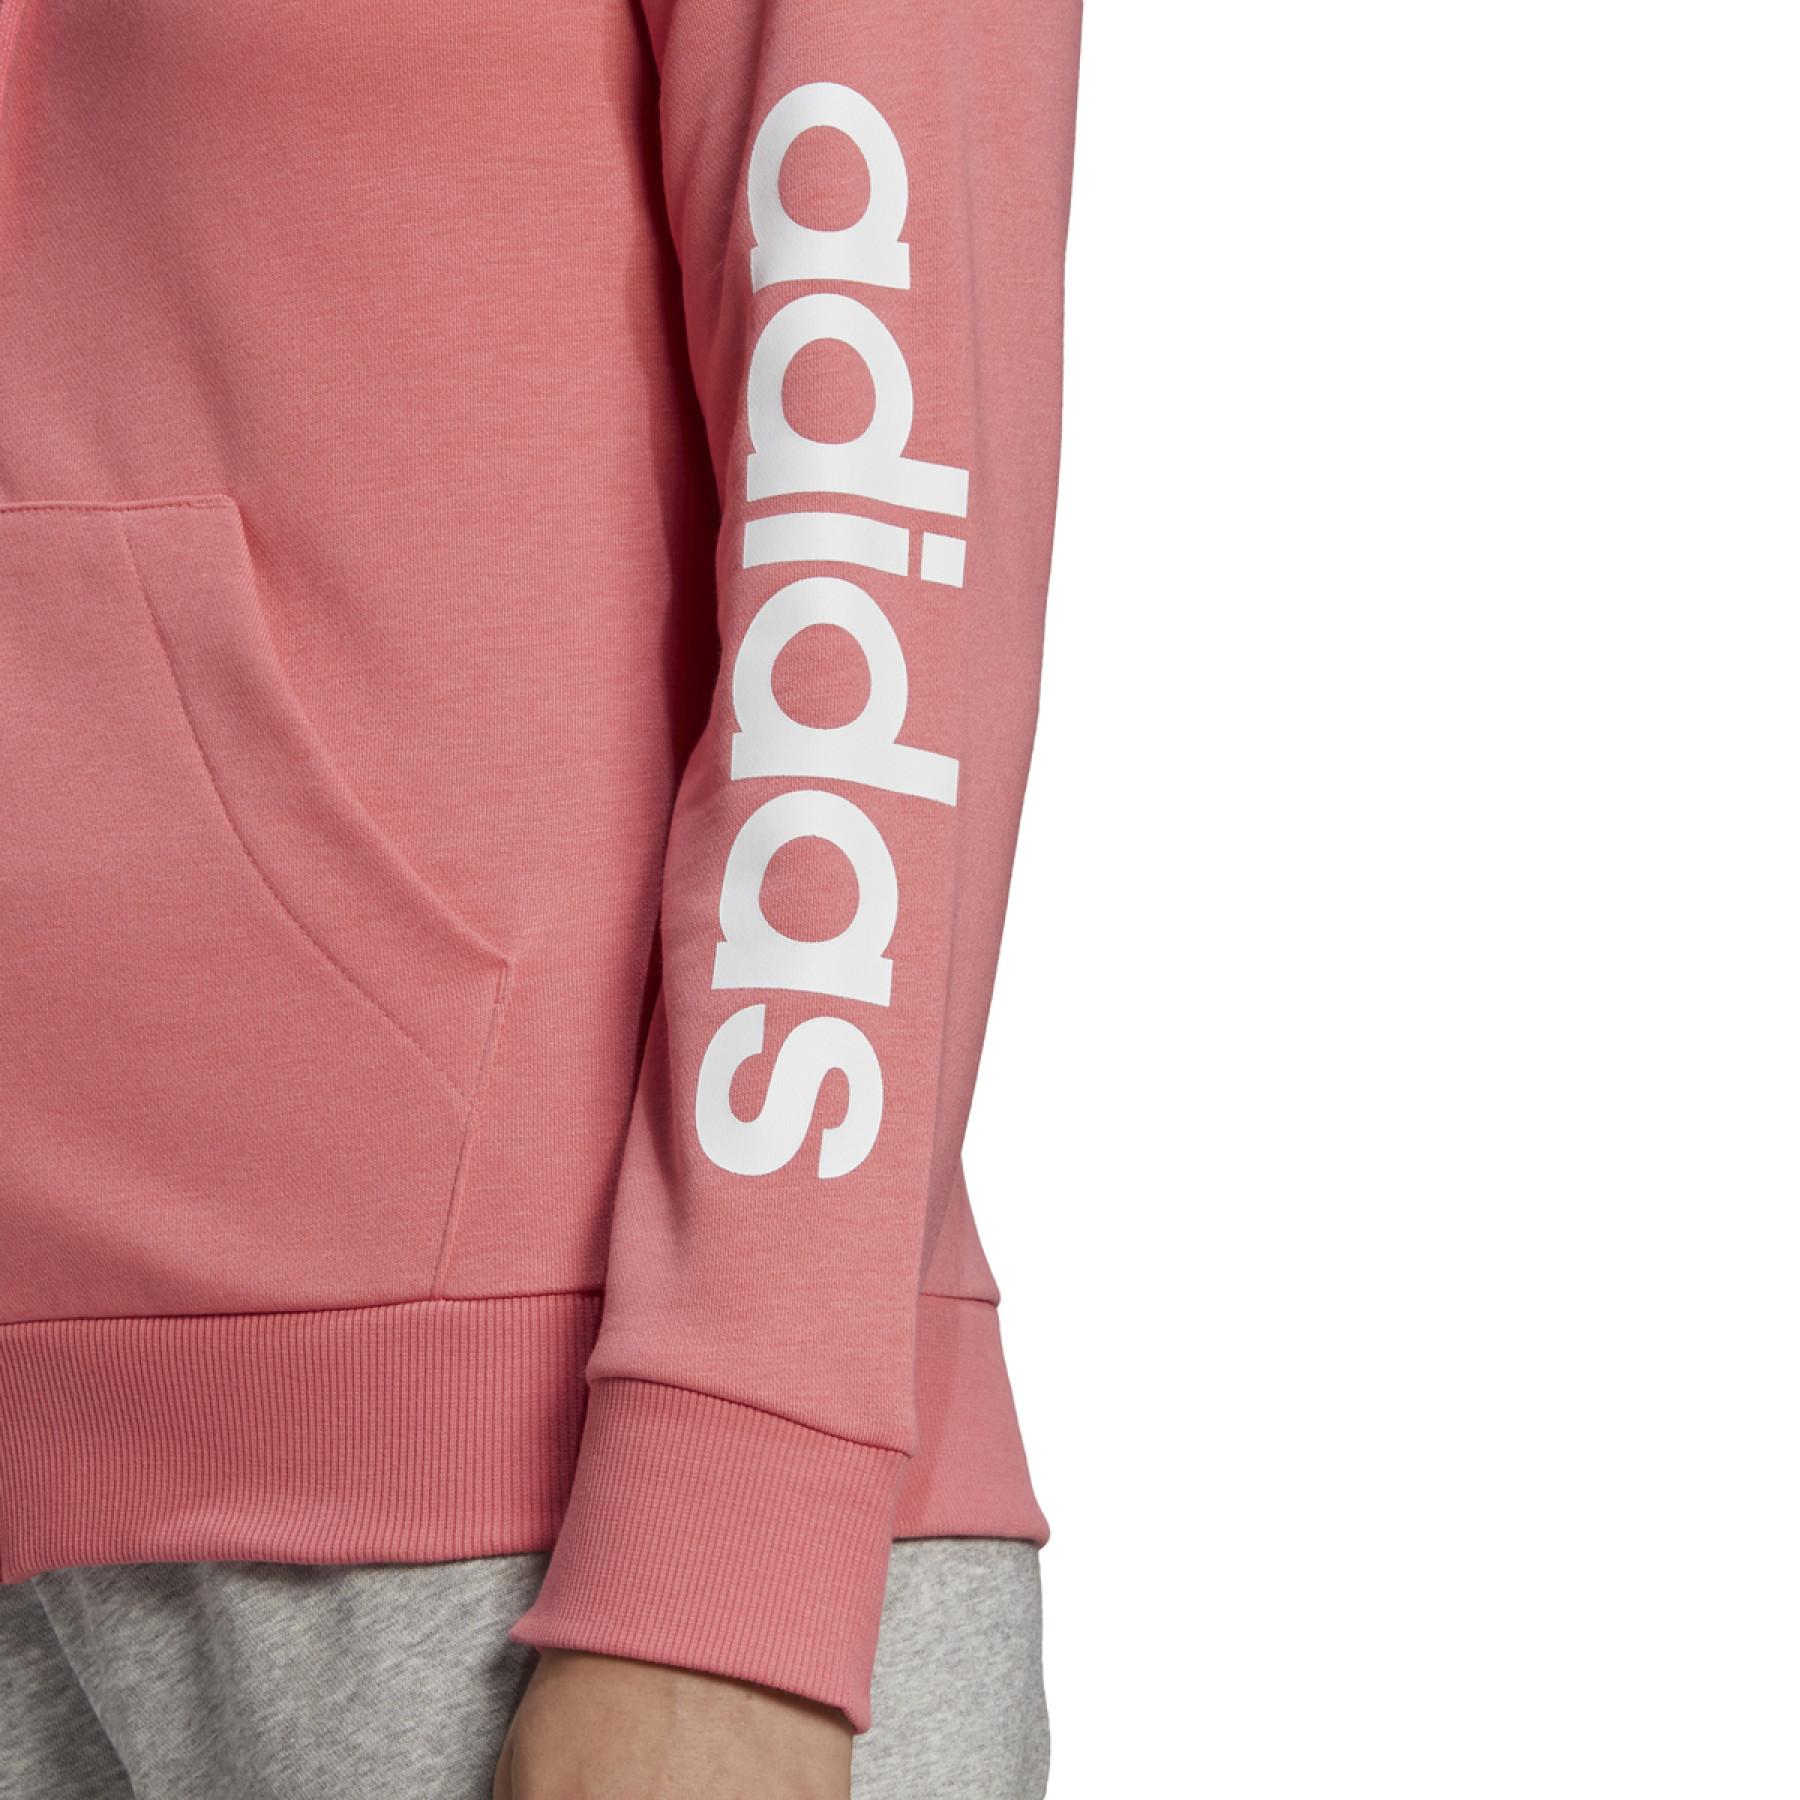 Damen-Kapuzenpulli mit Reißverschluss adidas Essentials Logo